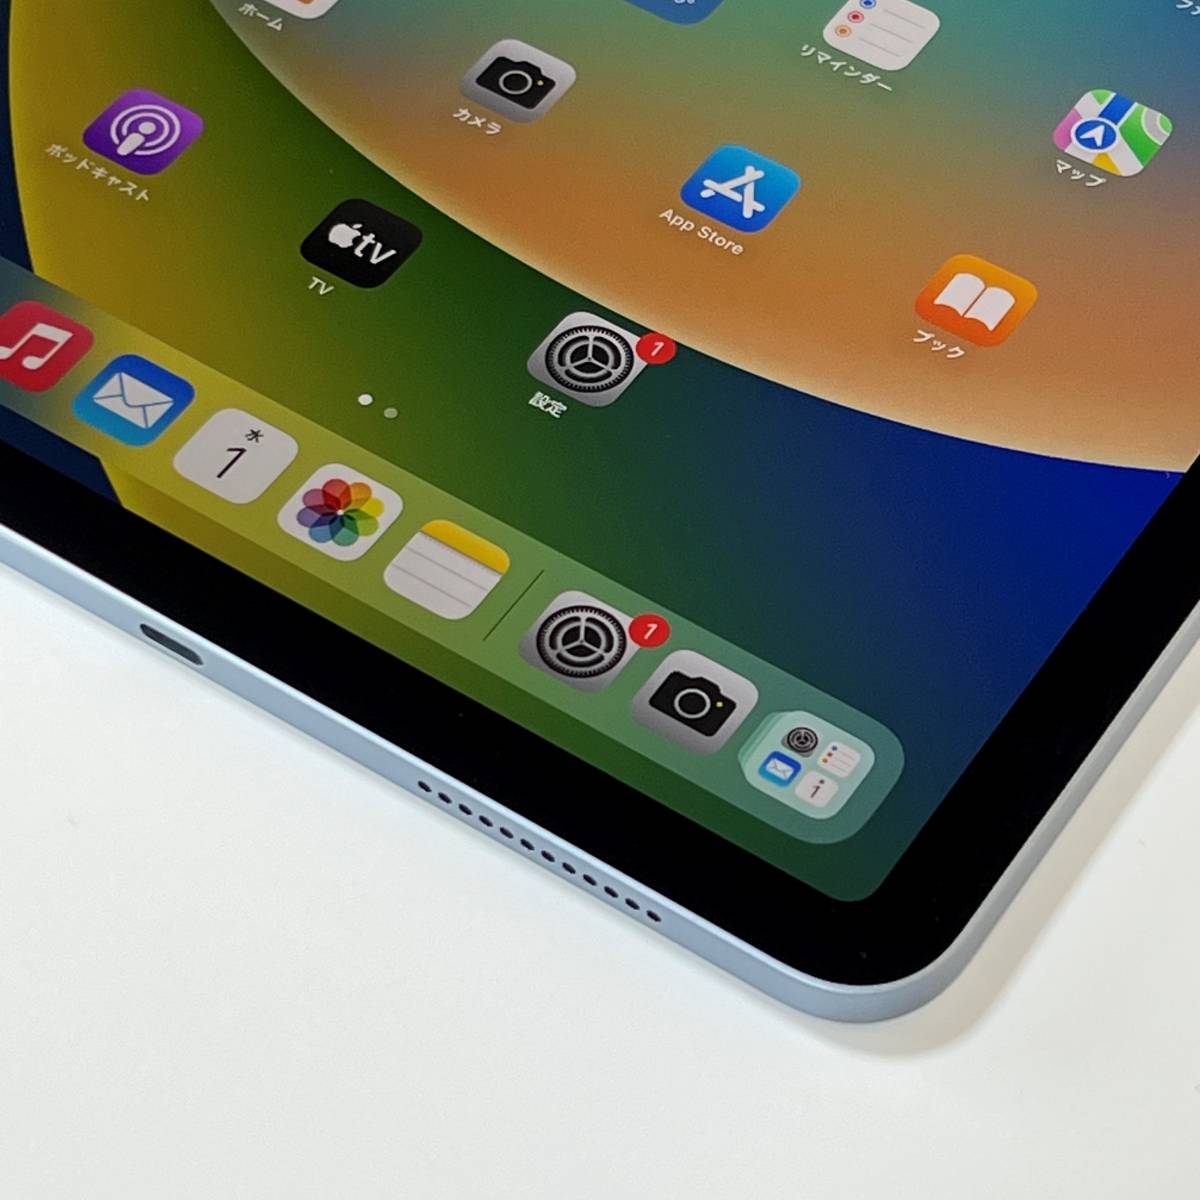 Apple iPad Air (第4世代) スカイブルー 64GB MYFQ2LL/A Wi-Fiモデル iOS16.3.1 海外版 シャッター音無し  アクティベーションロック解除済